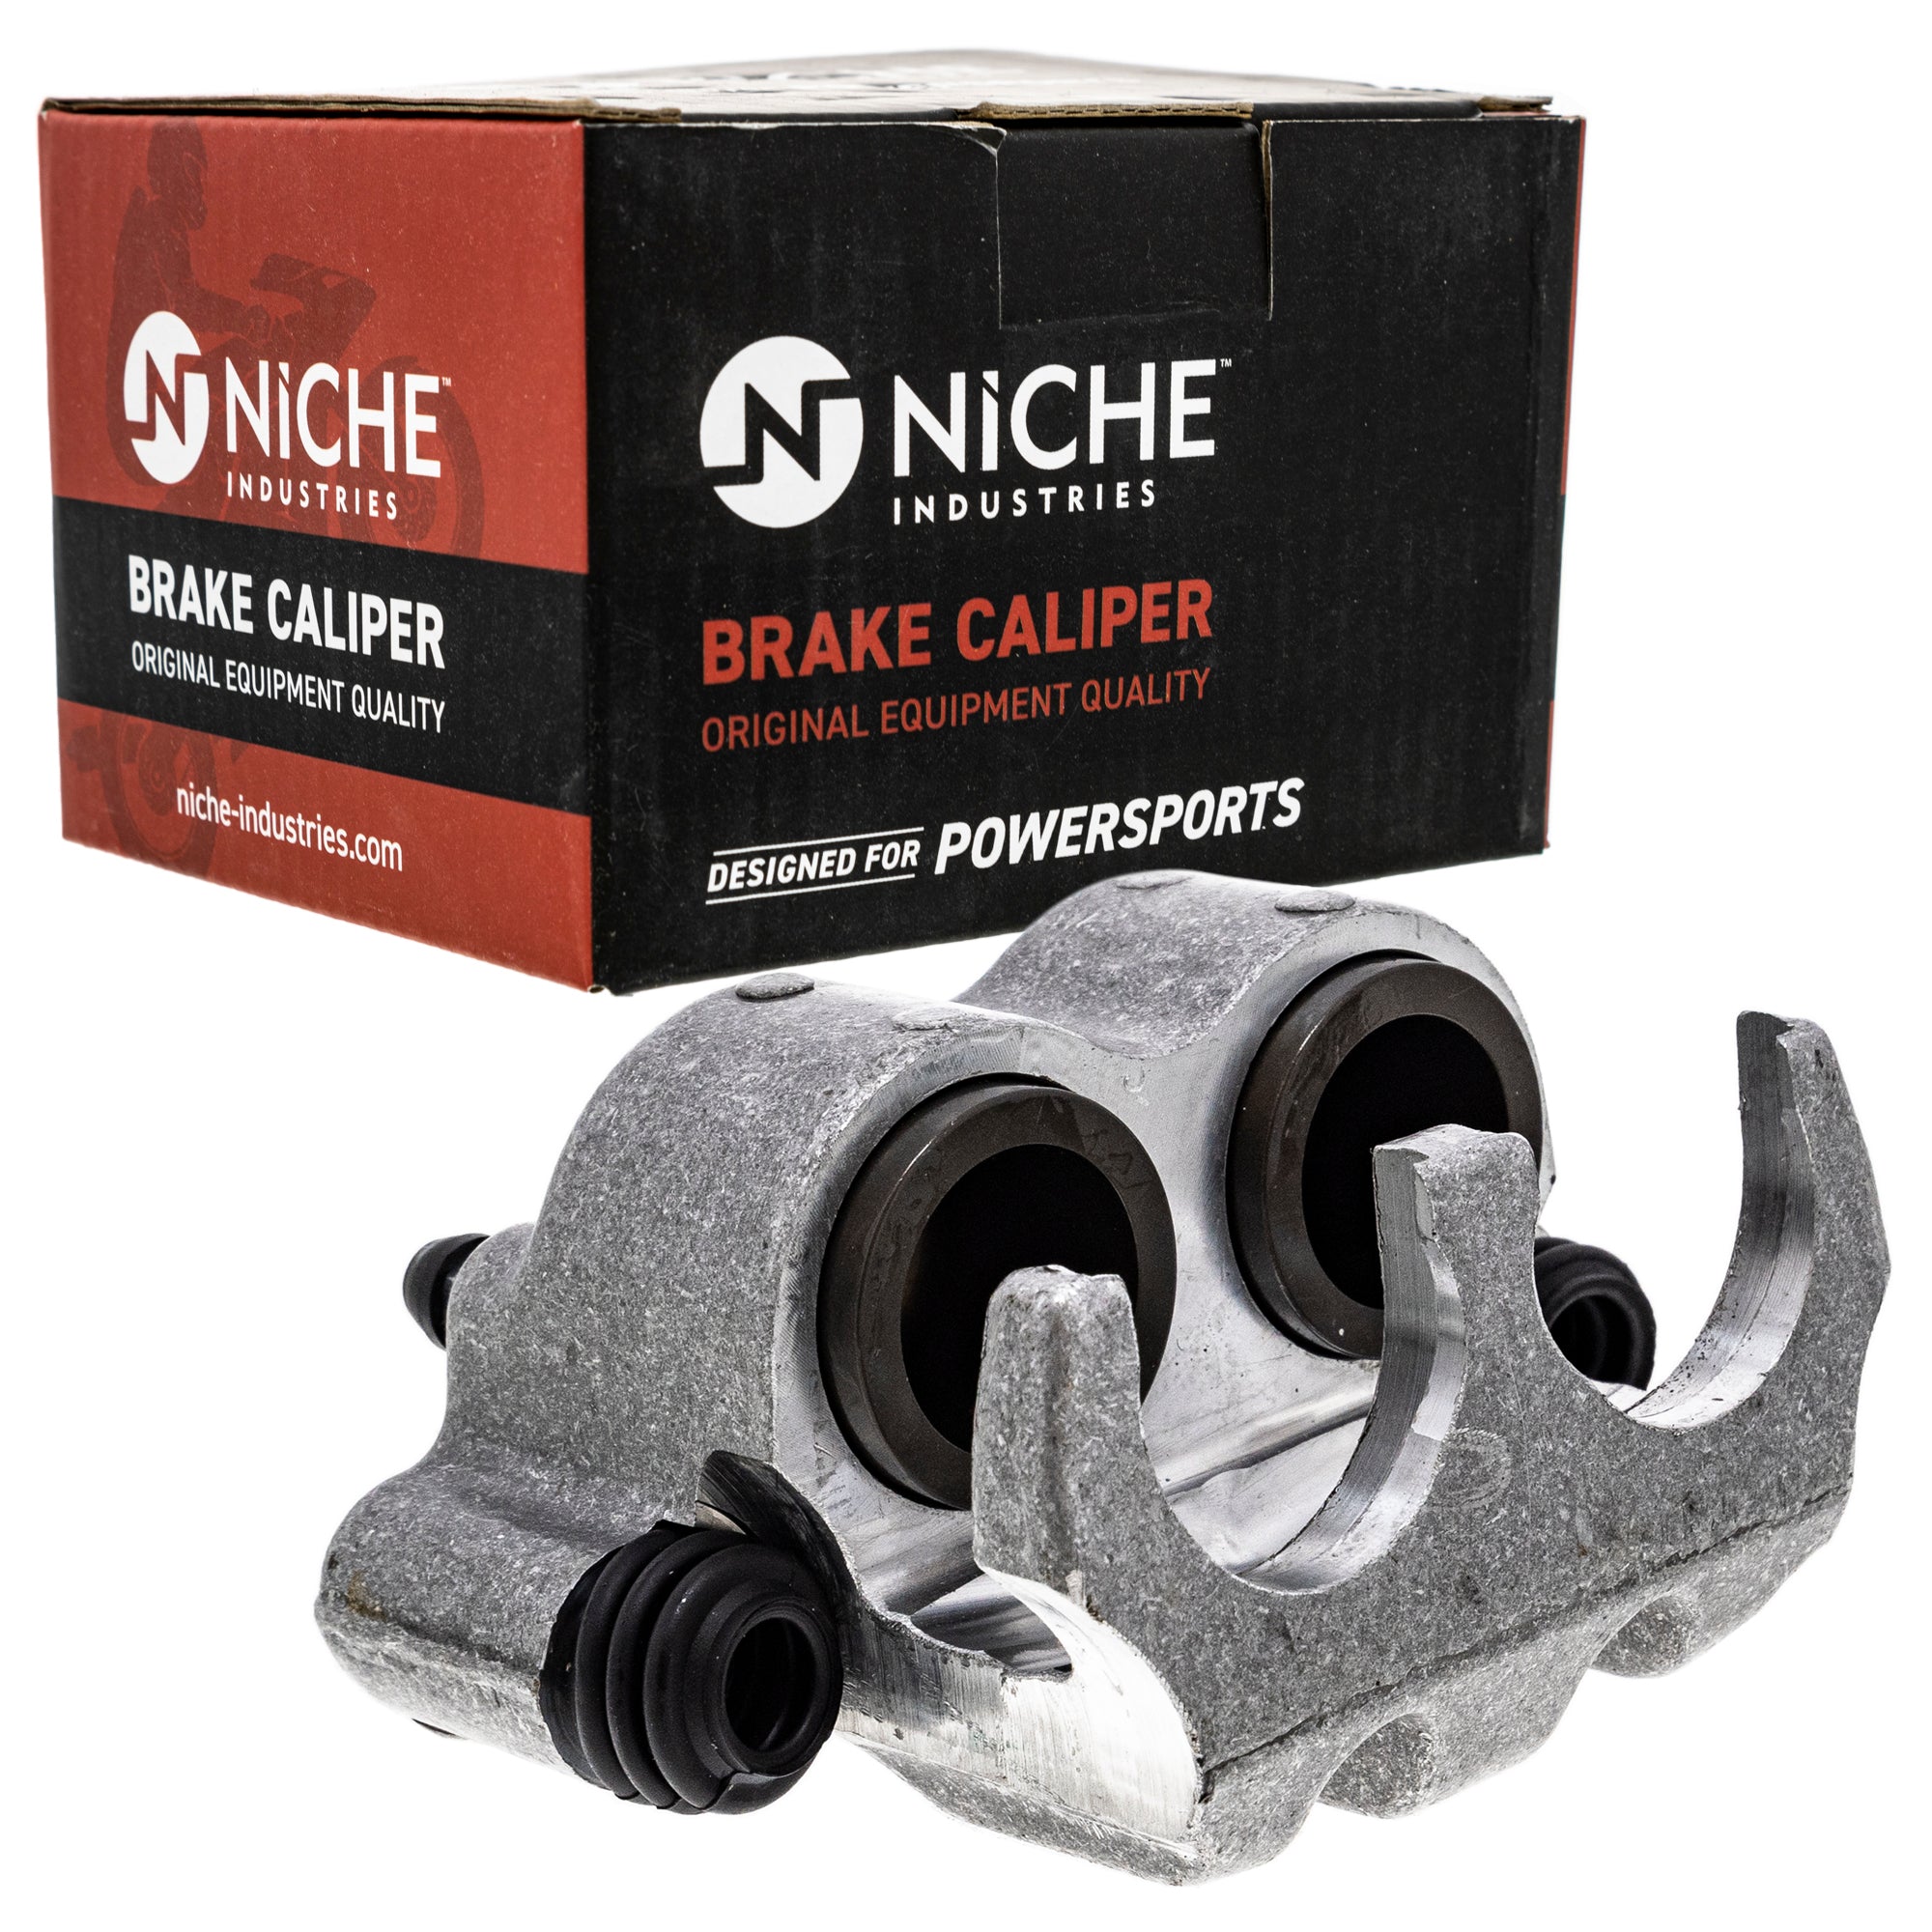 NICHE MK1001252 Brake Caliper Kit